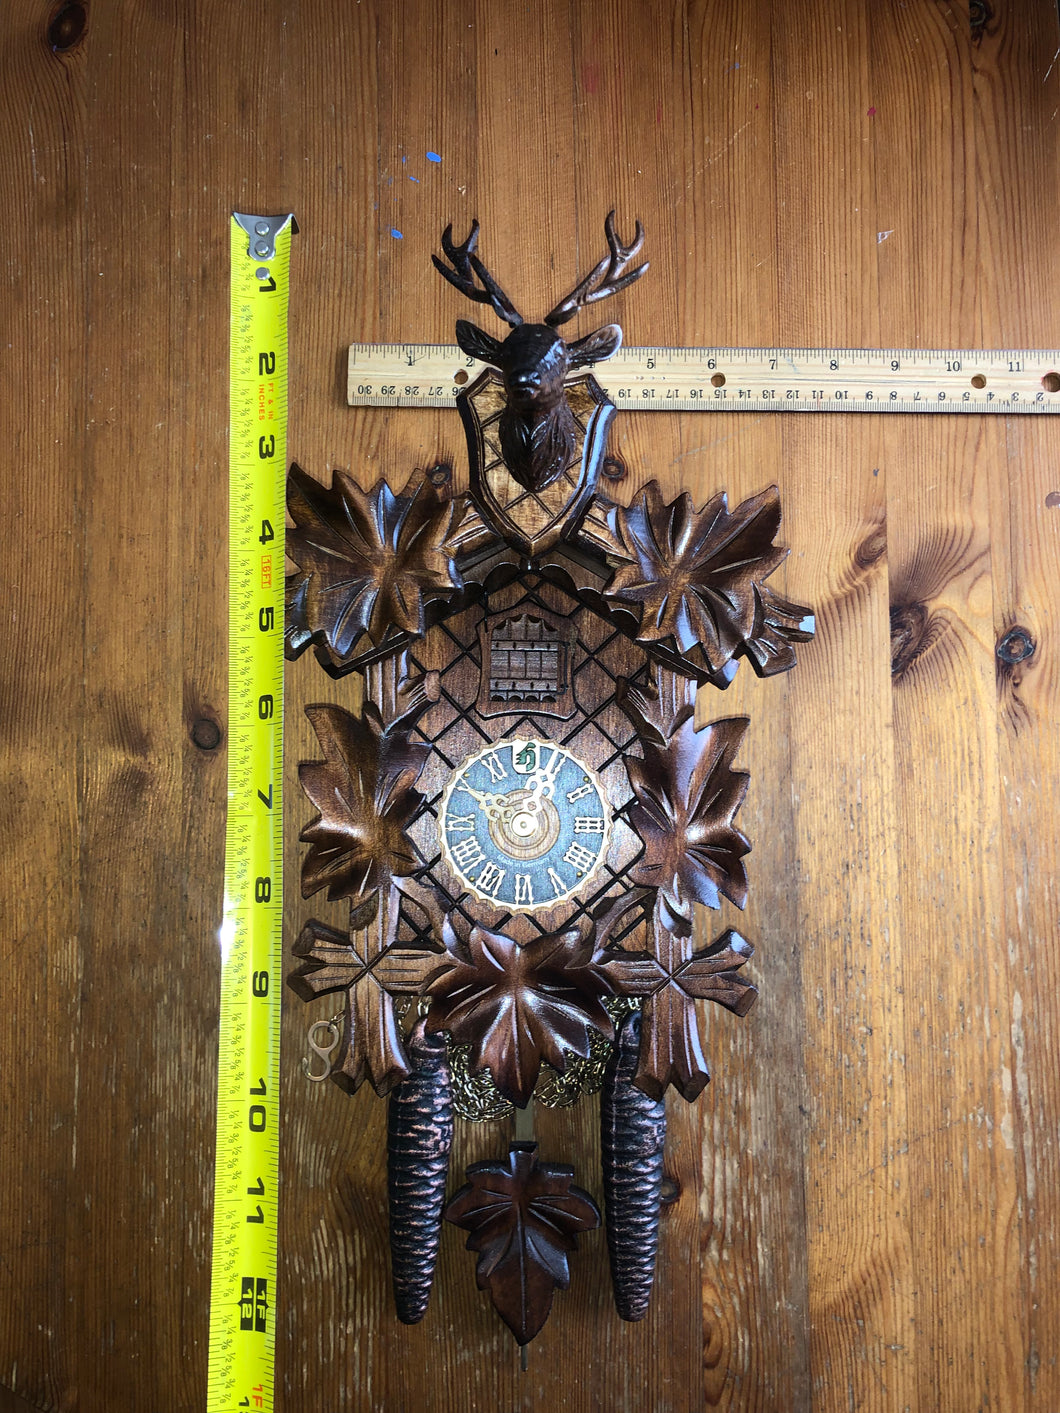 VINTAGE - One Day Hönes Cuckoo Clock with Deer Head